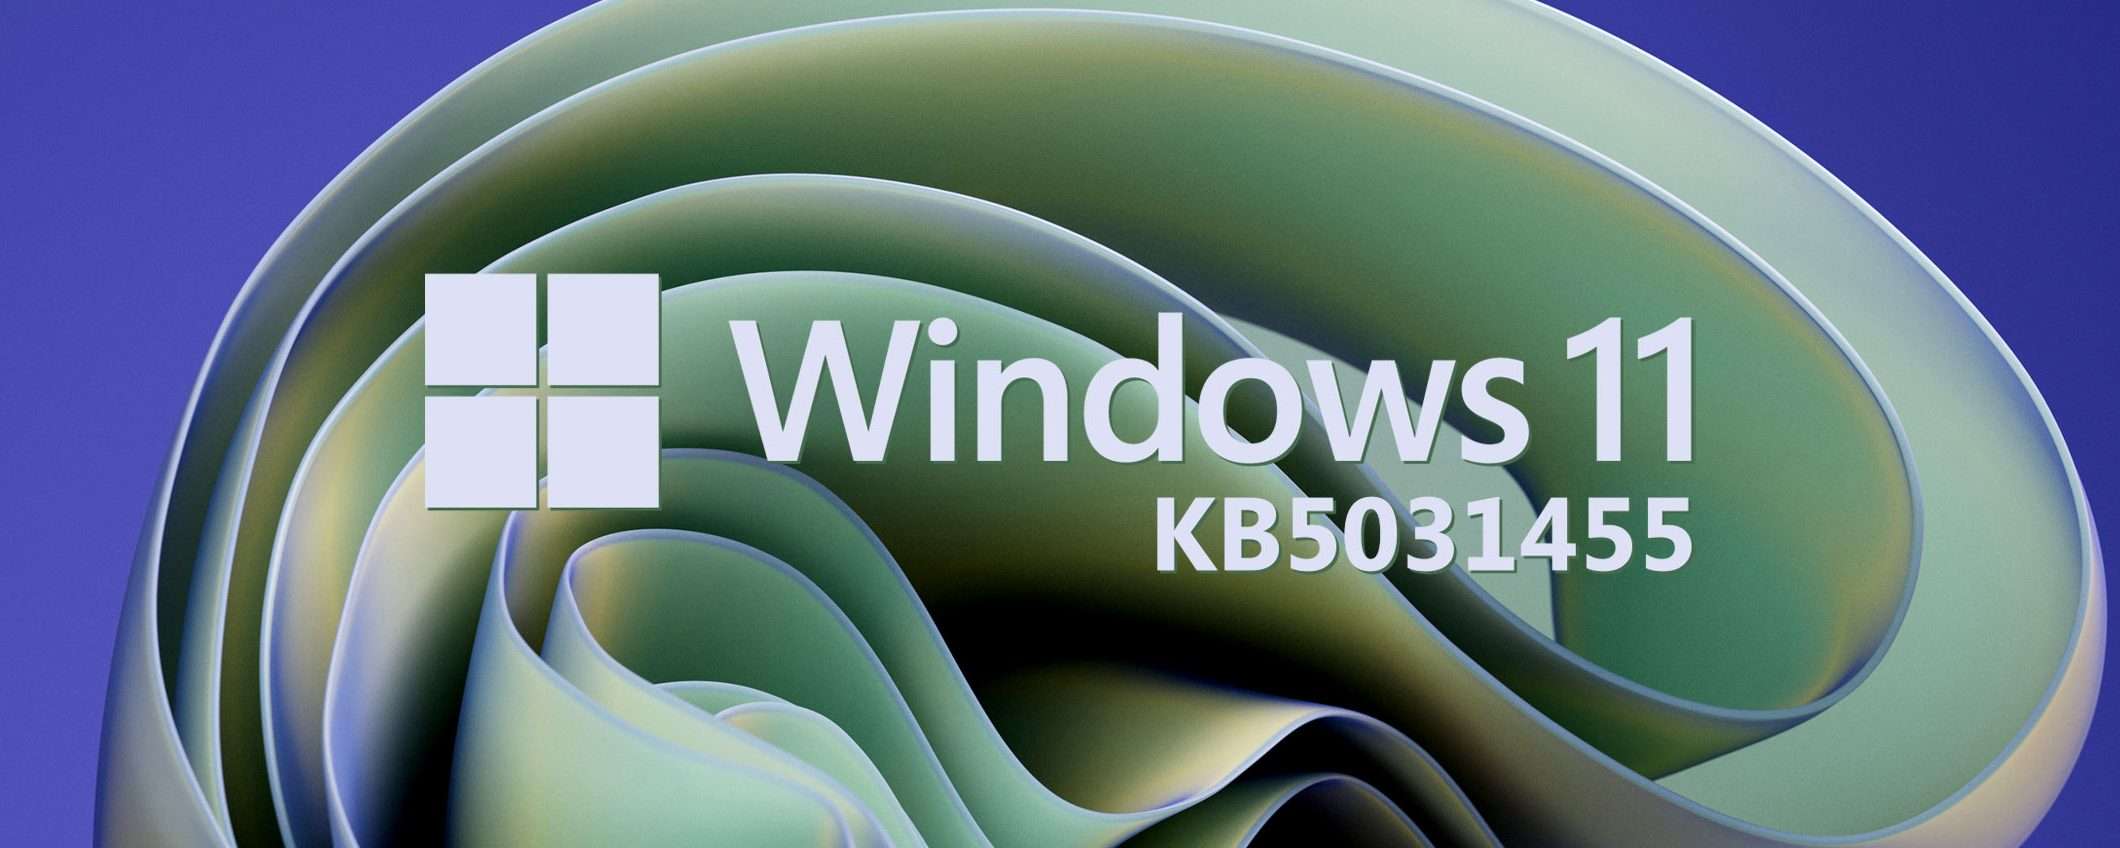 Windows 11 KB5031455 in download: le novità